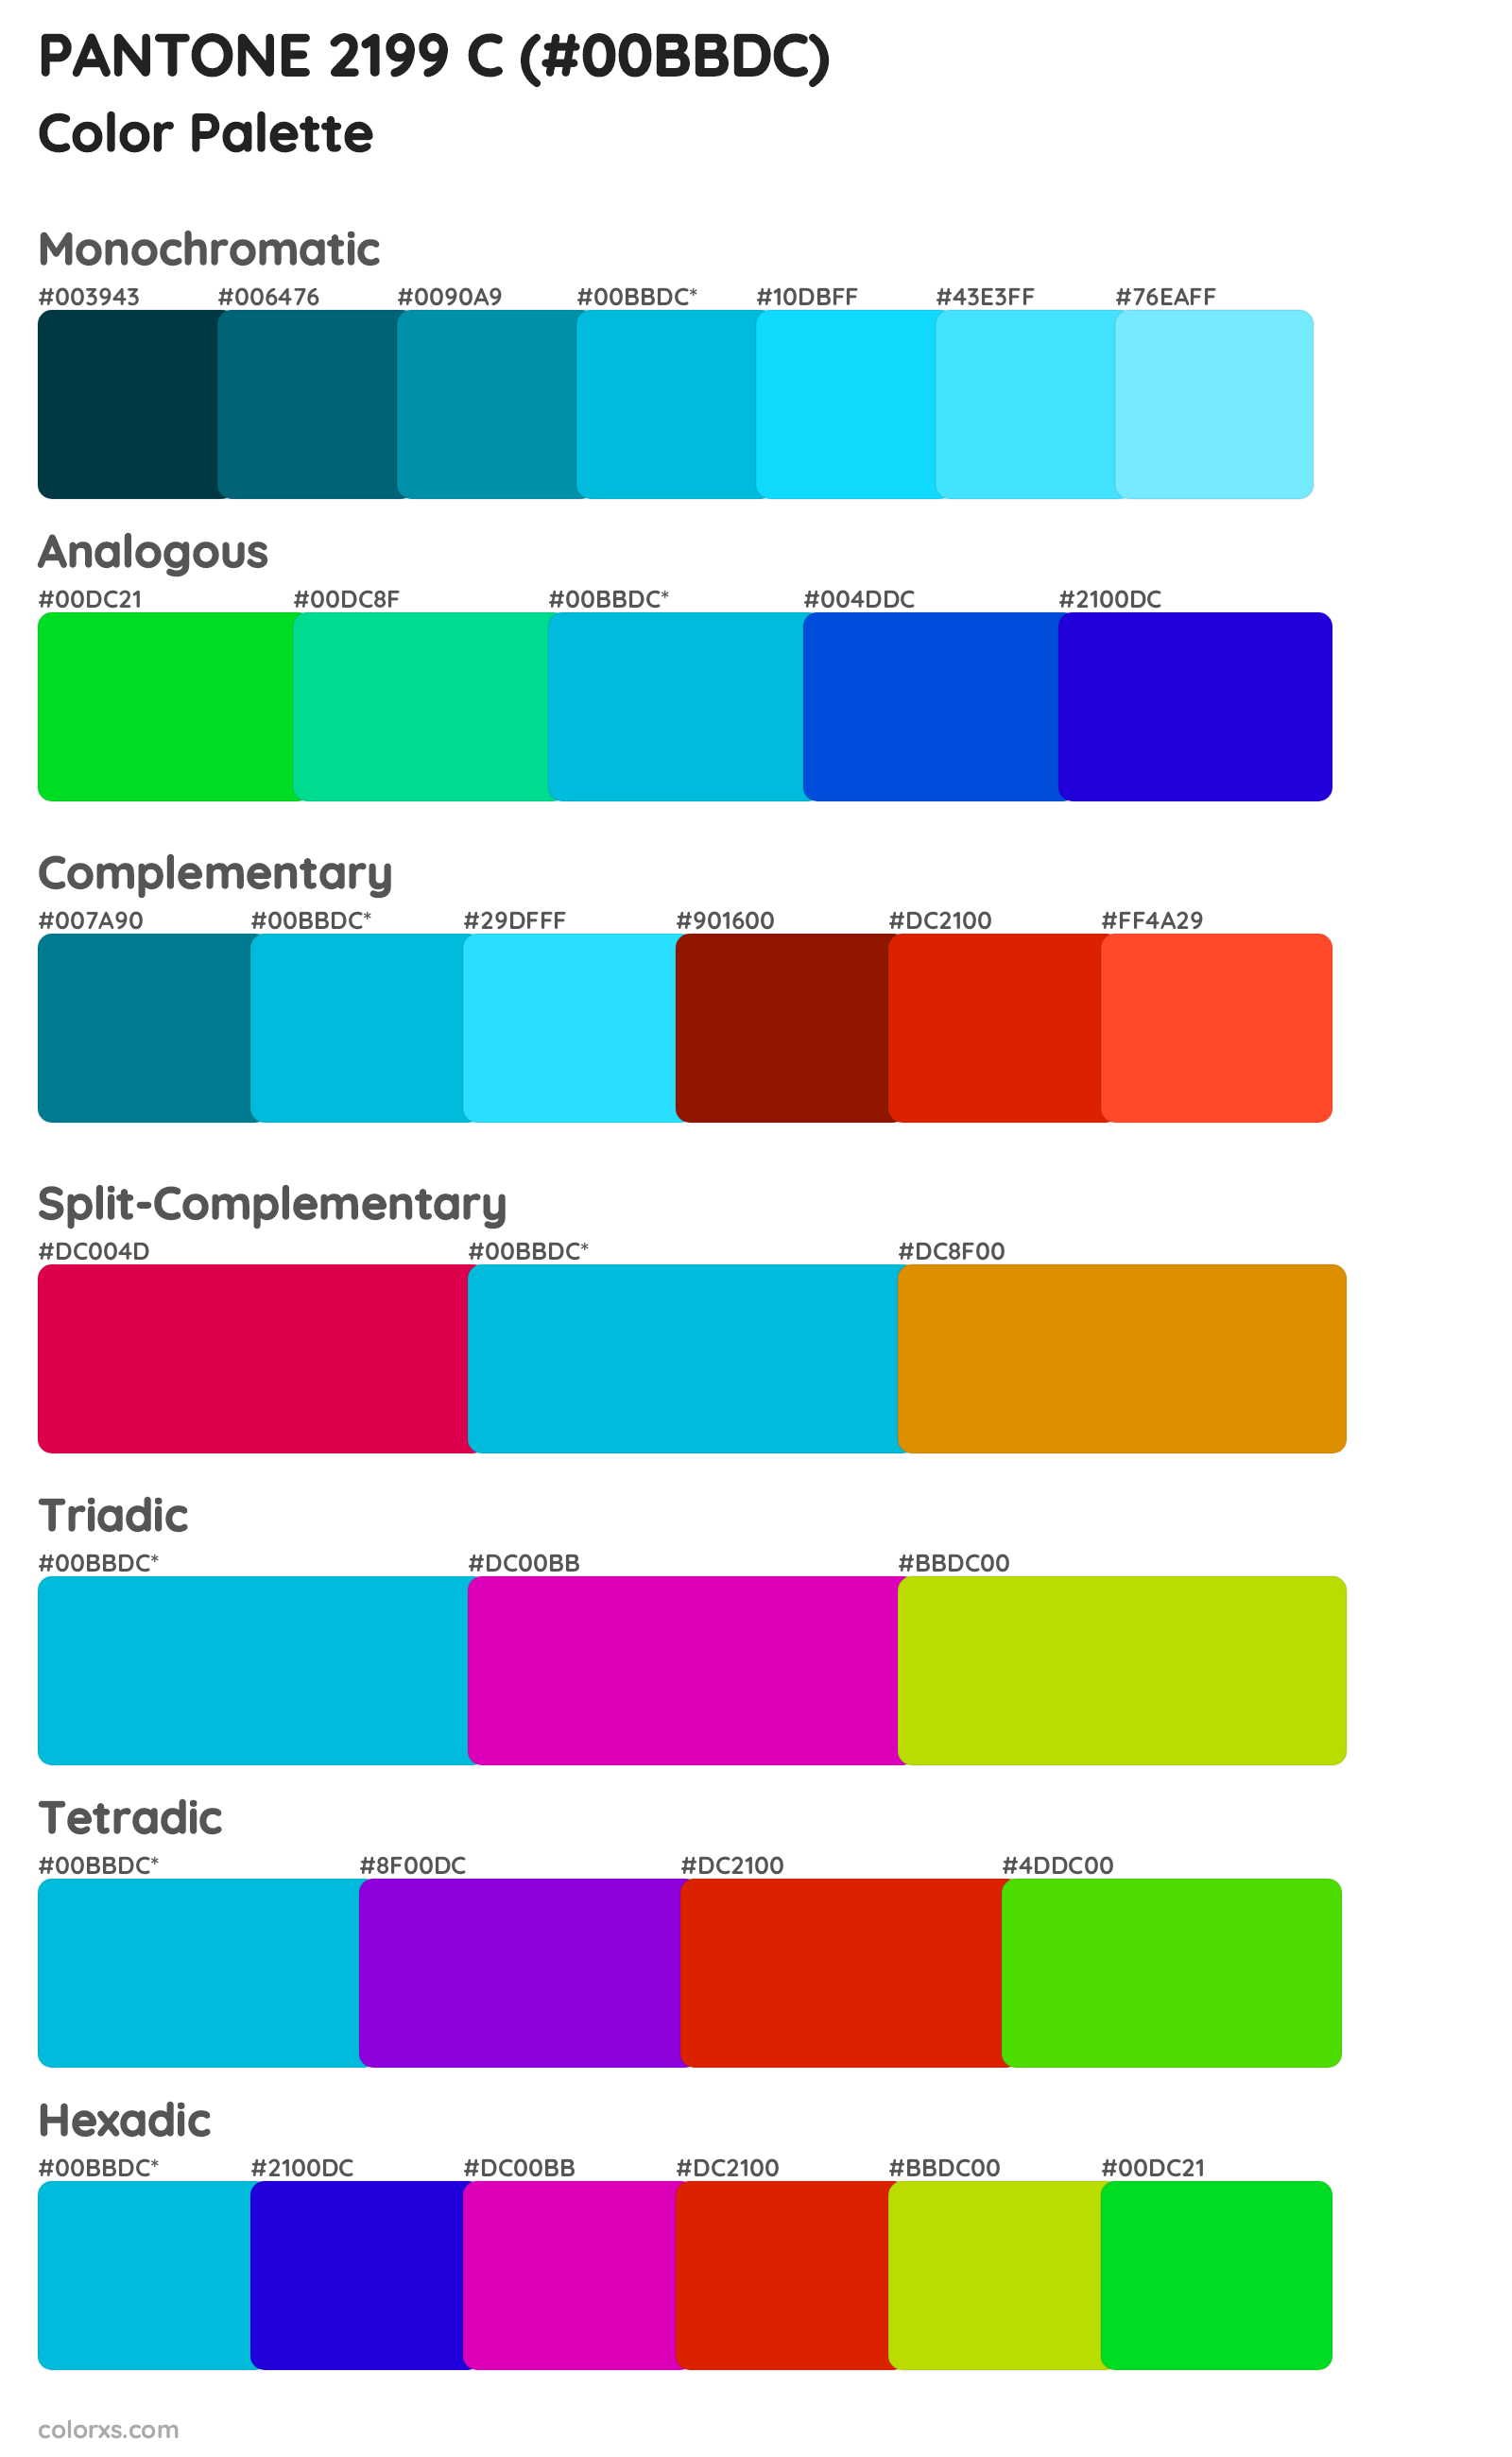 PANTONE 2199 C Color Scheme Palettes